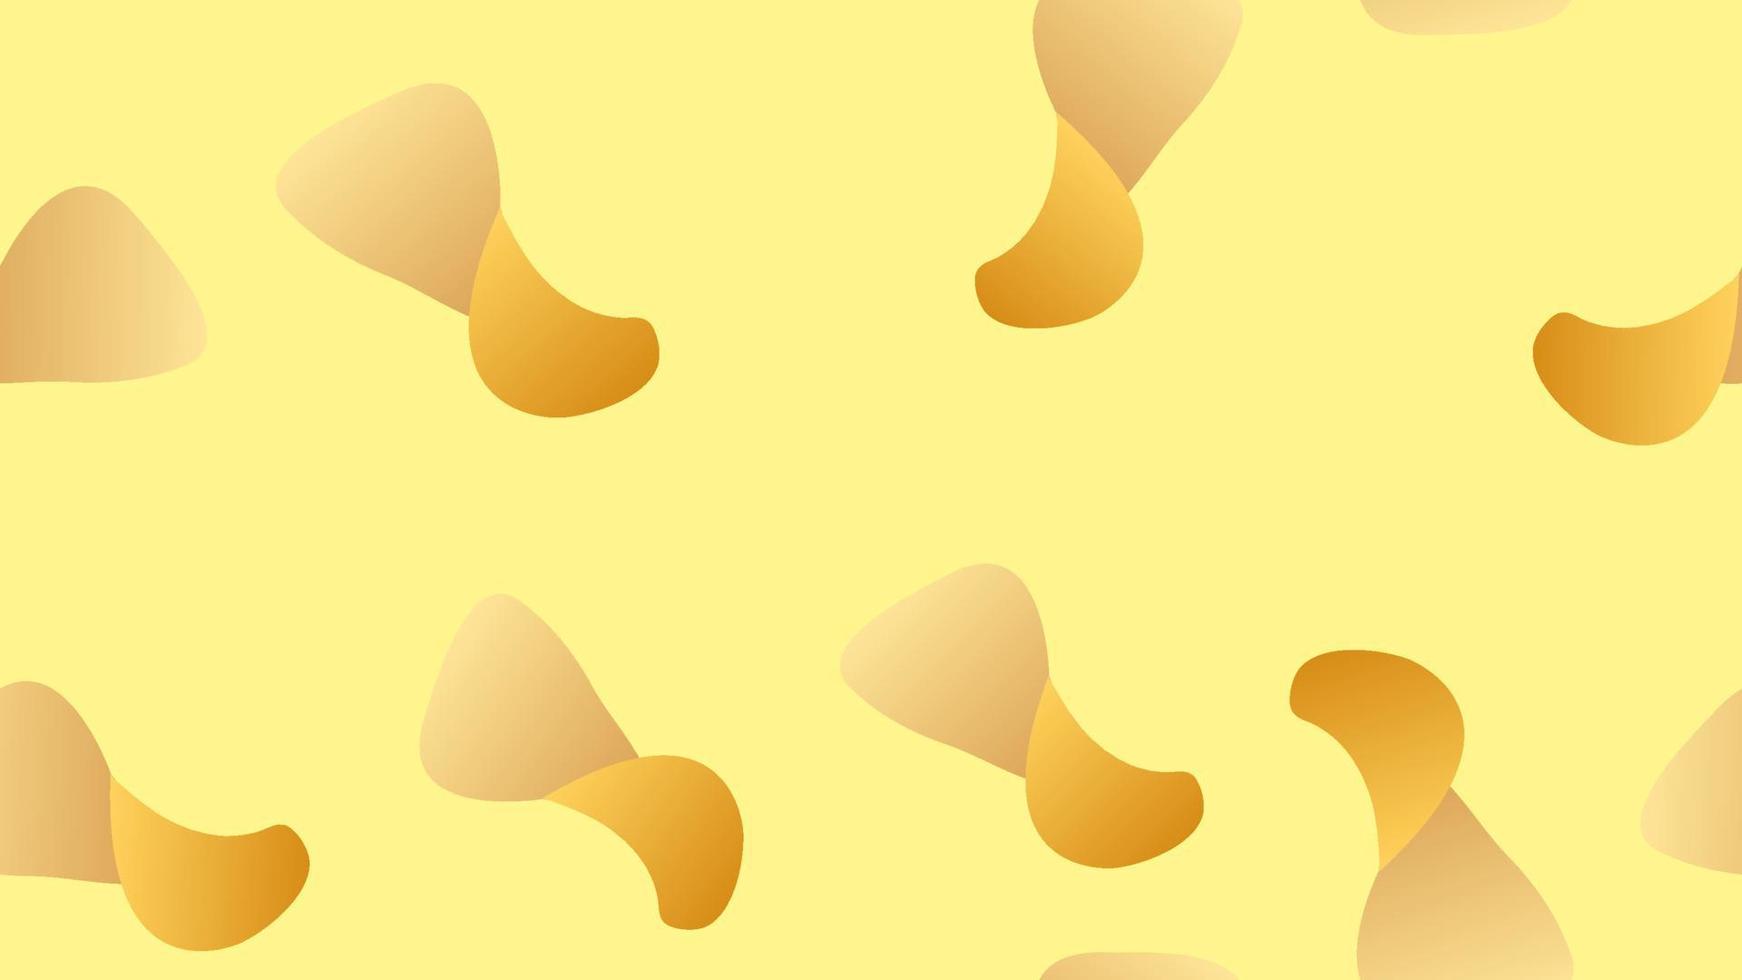 Patatas fritas vector de patrones sin fisuras. fondo de comida dibujado a mano. adorno de comida rápida de estilo artístico detallado